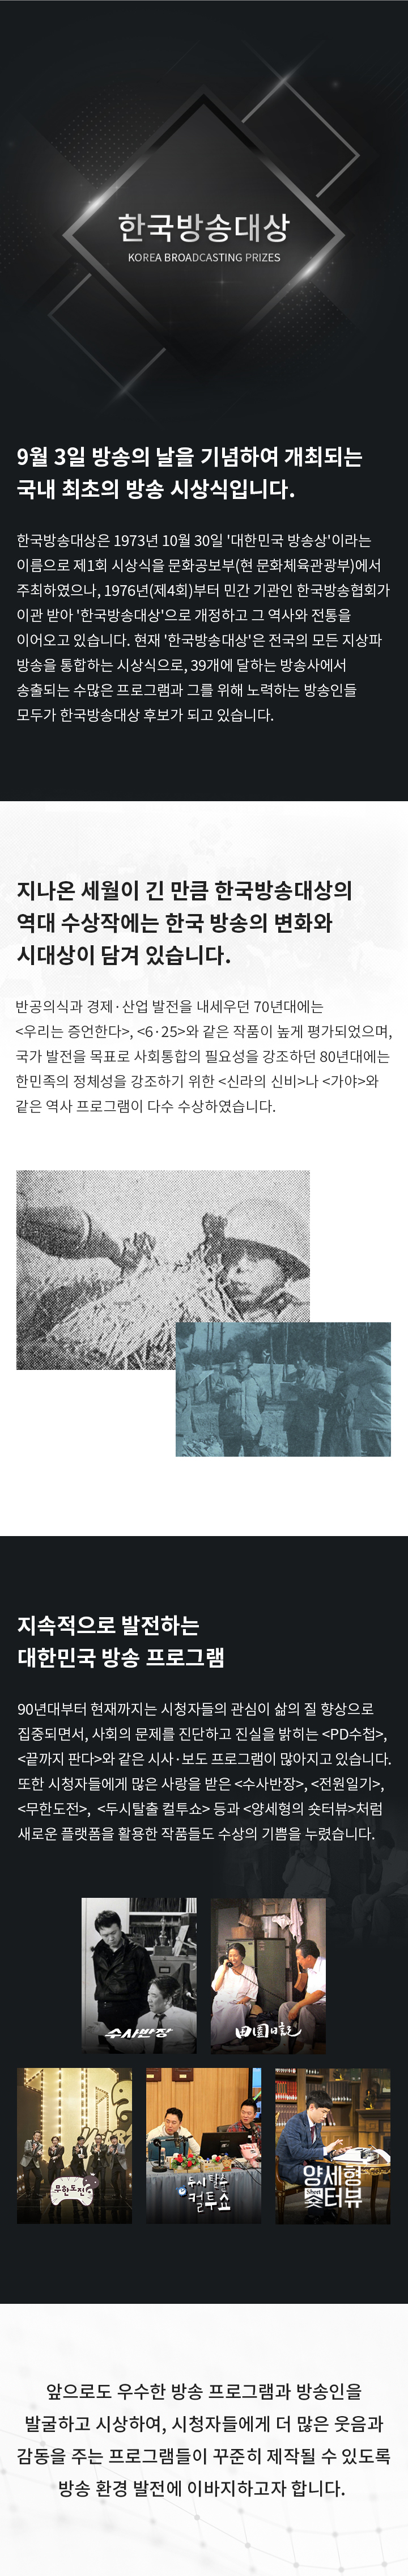 한국방송대상 소개 이미지